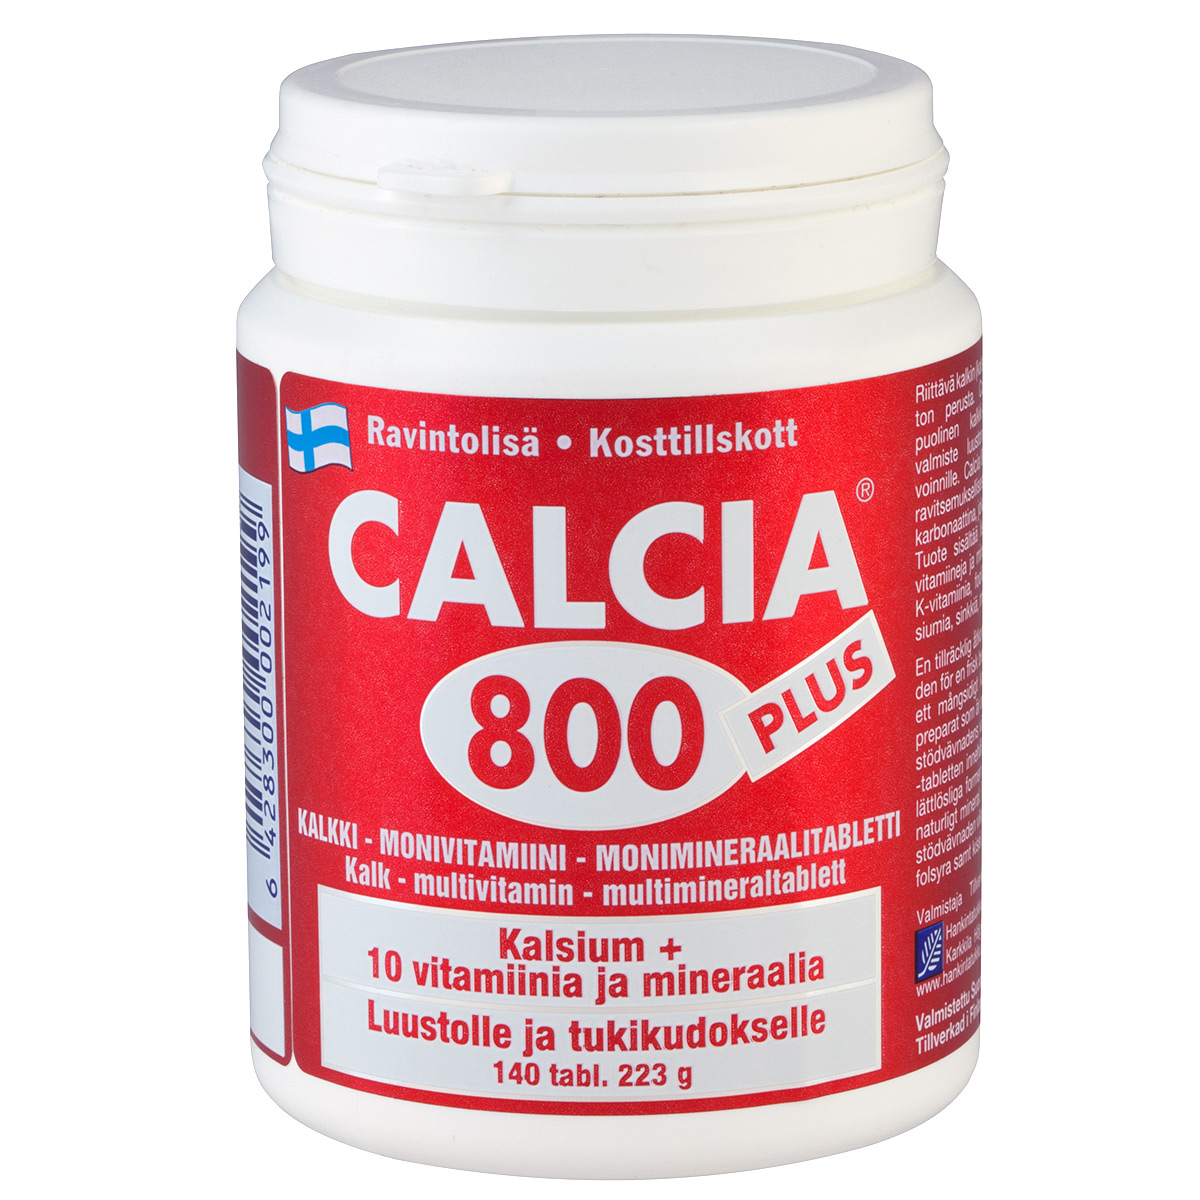 Calcia 800 Plus 140pills/223g